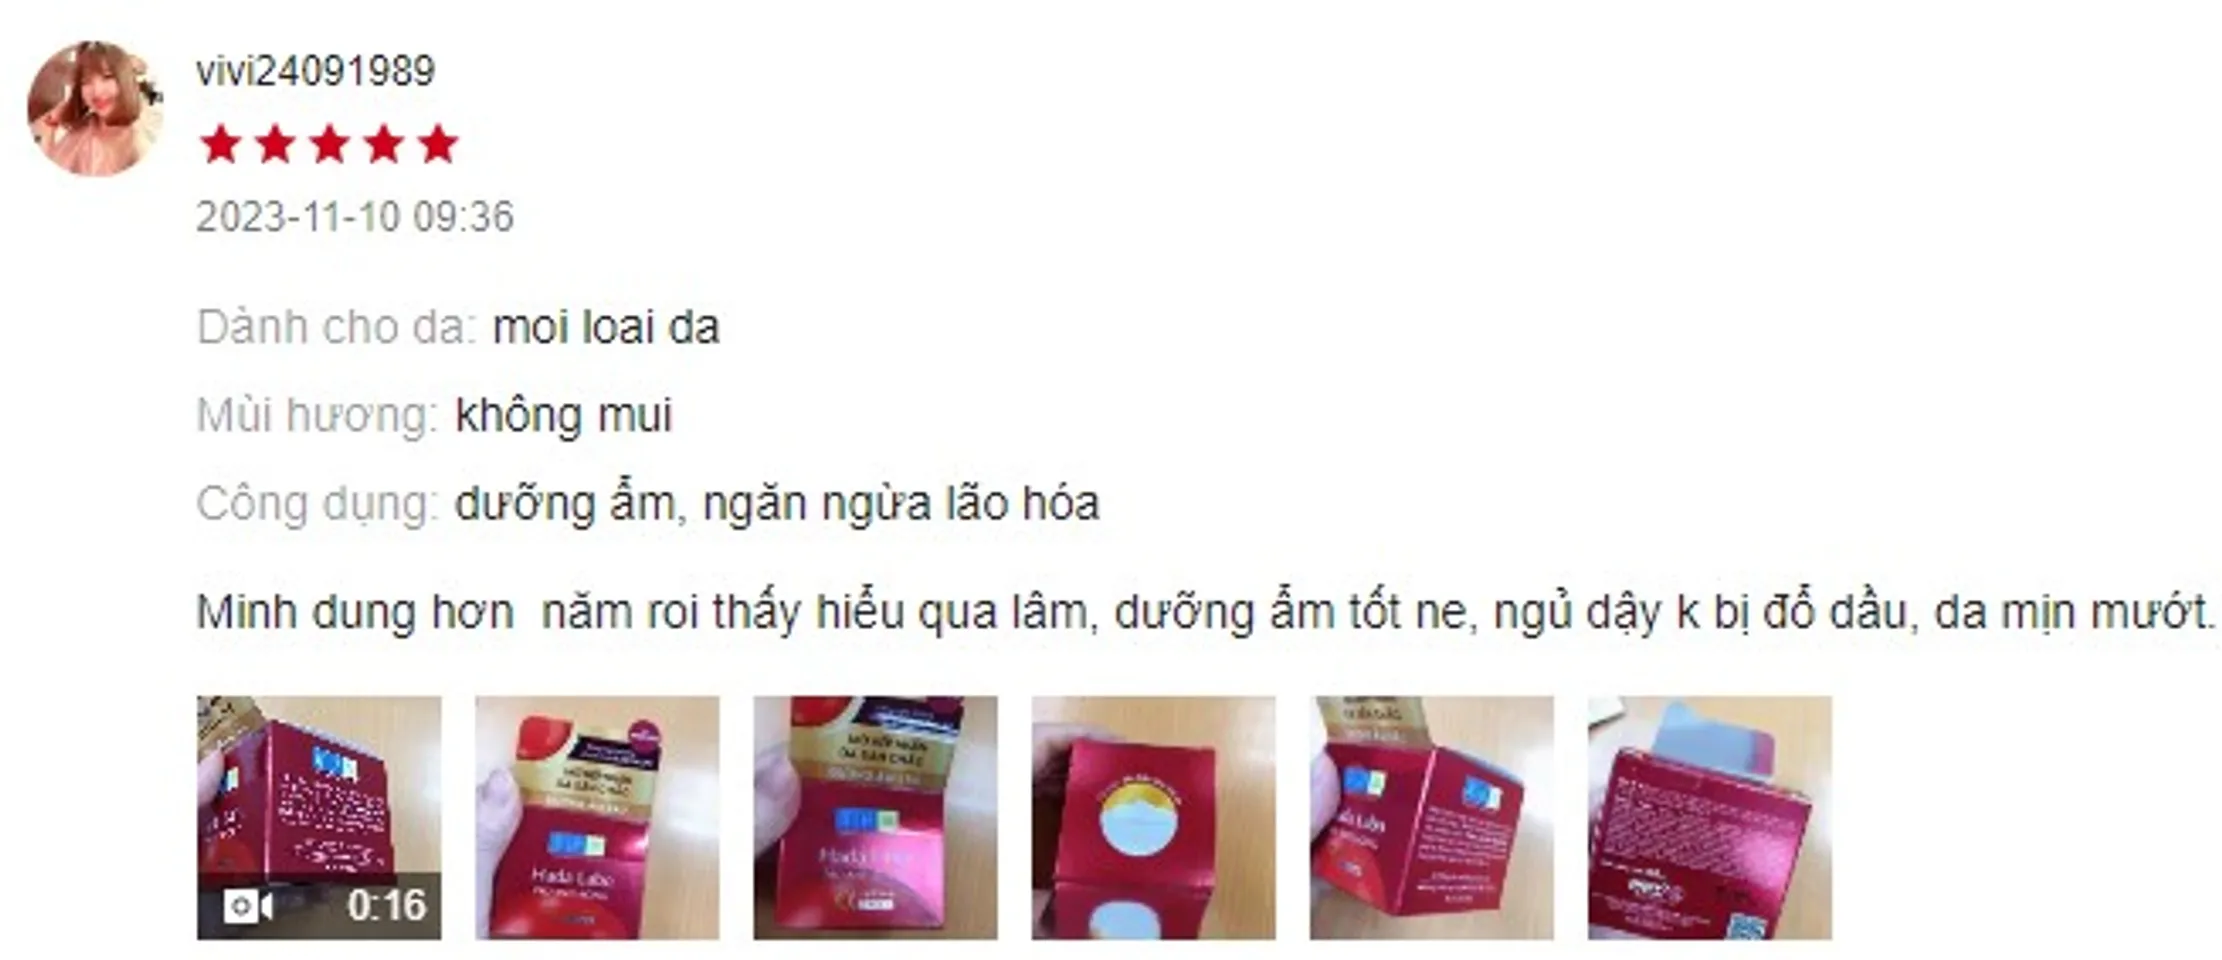 Review kem dưỡng Shiseido Aqualabel đỏ có tốt không?